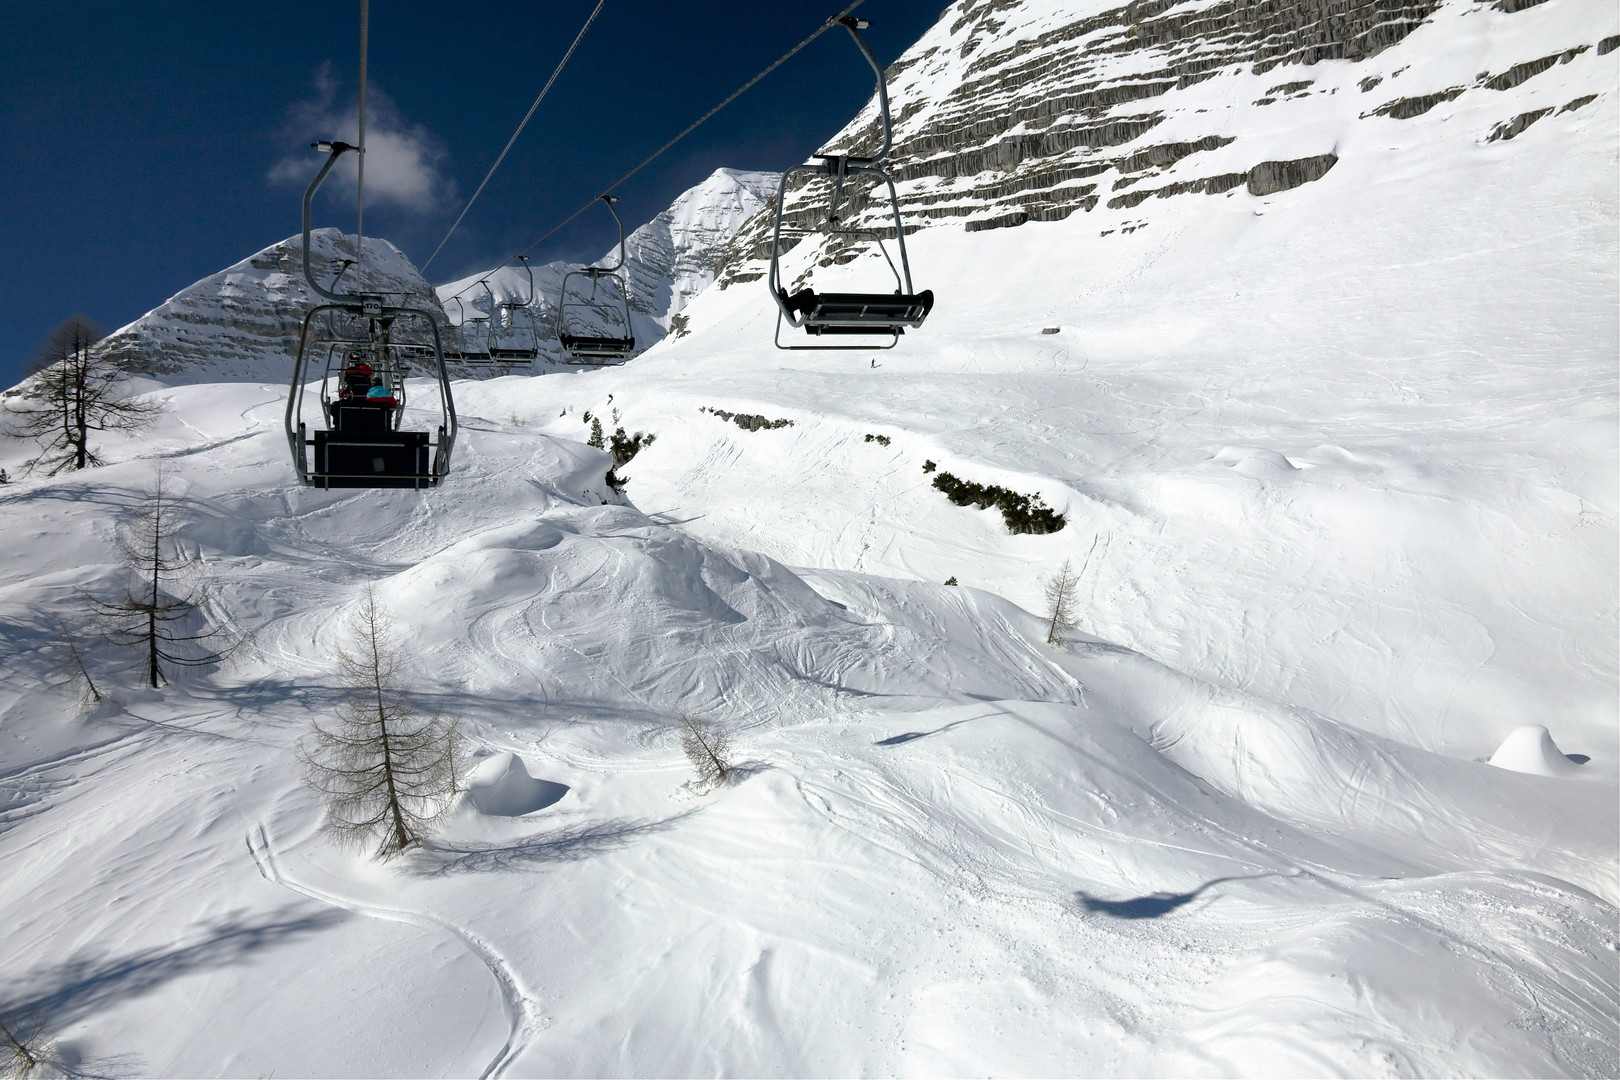 Obrázek hotelu 1 denní lyžování v Rakousku - Hinterstoder - autobusem